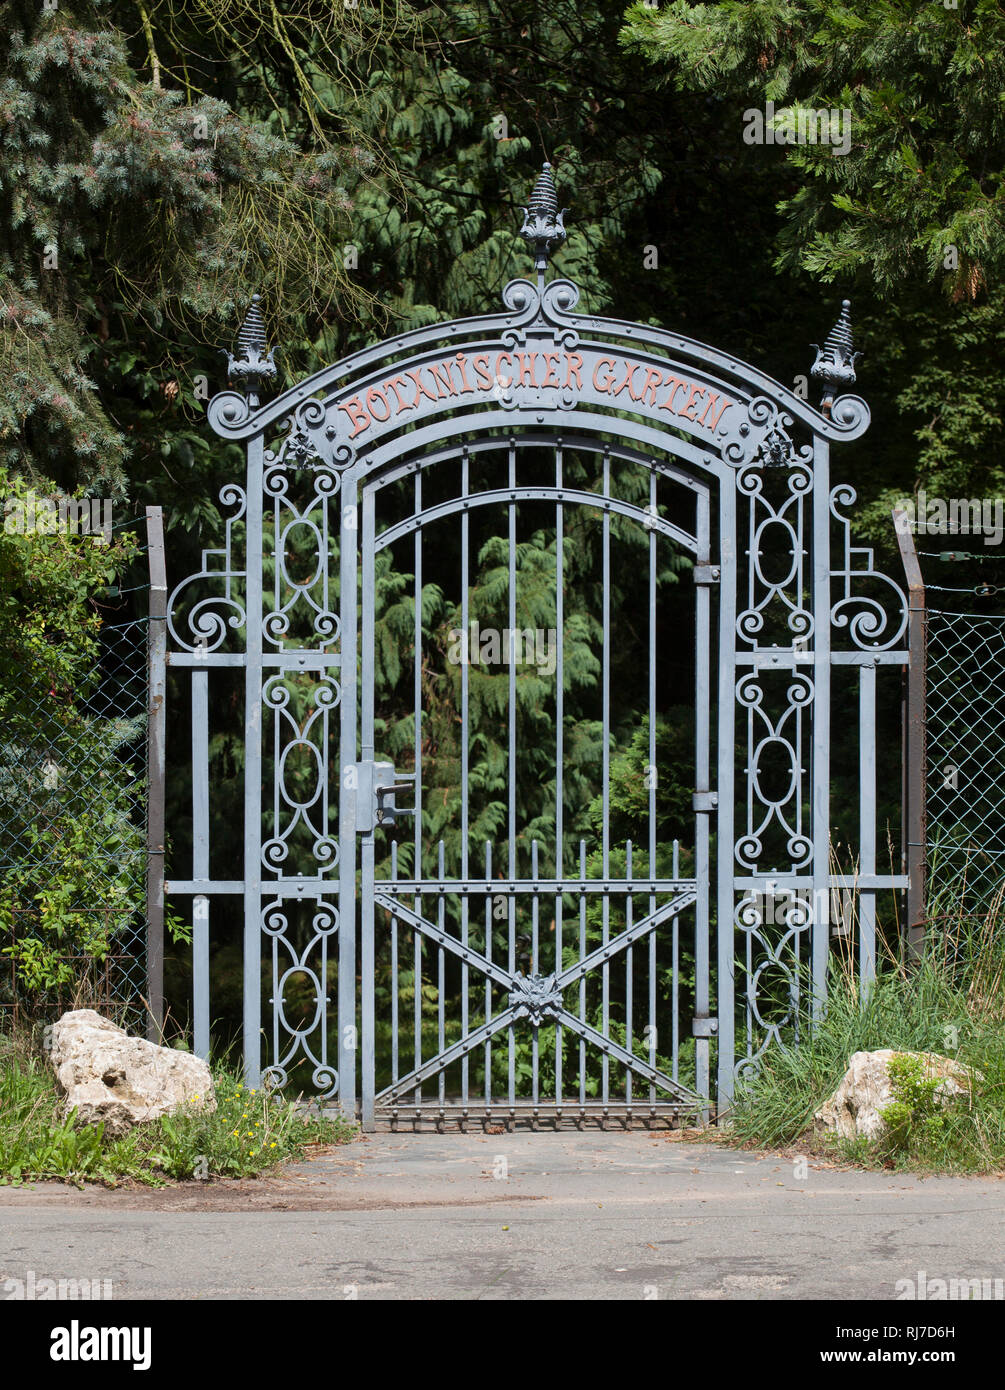 Alte verzierte eiserne Eingangstür zum Botanischen Garten, Darmstadt, Hessen, Deutschland, Europa Stock Photo